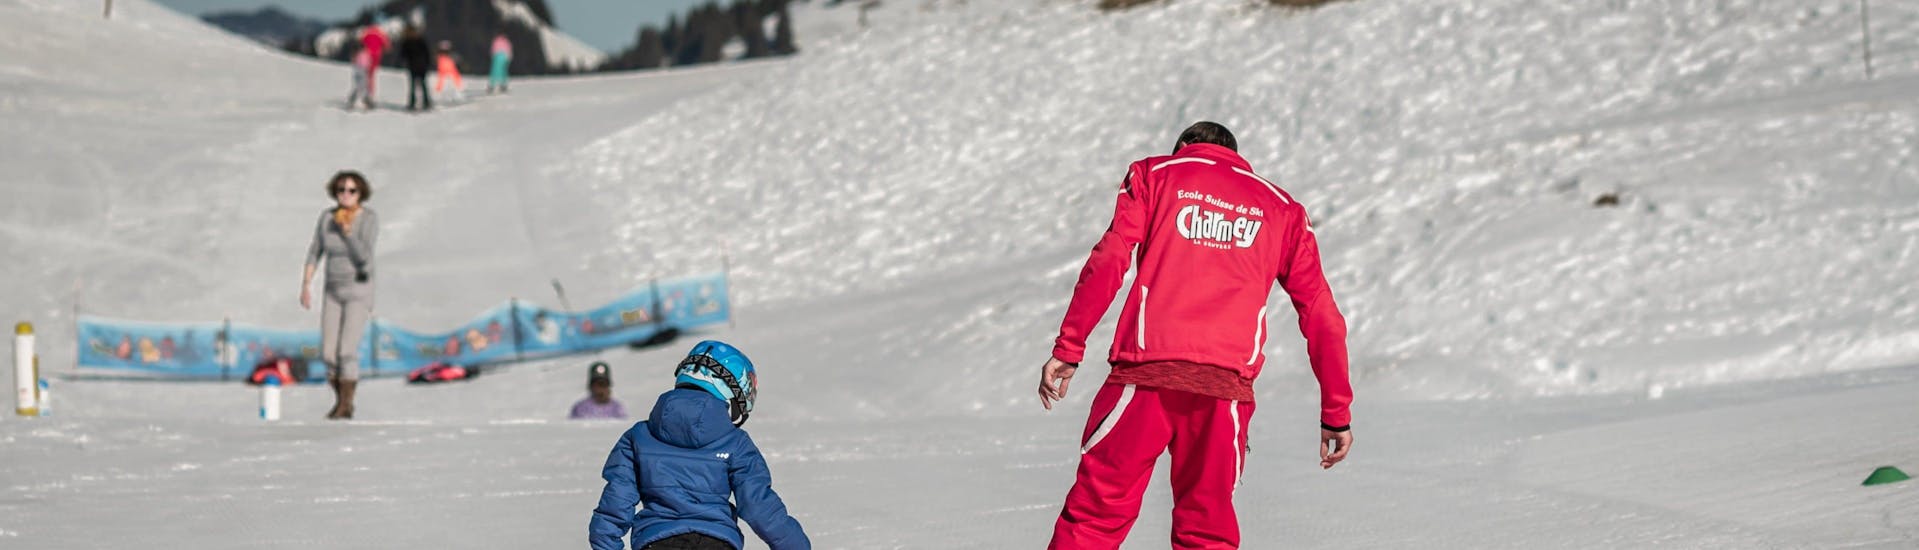 Un enfant apprend les bases du ski avec son moniteur de ski de l'école de ski suisse Charmey pendant son Cours particulier de ski Enfants (dès 3 ans) - Tous niveaux.